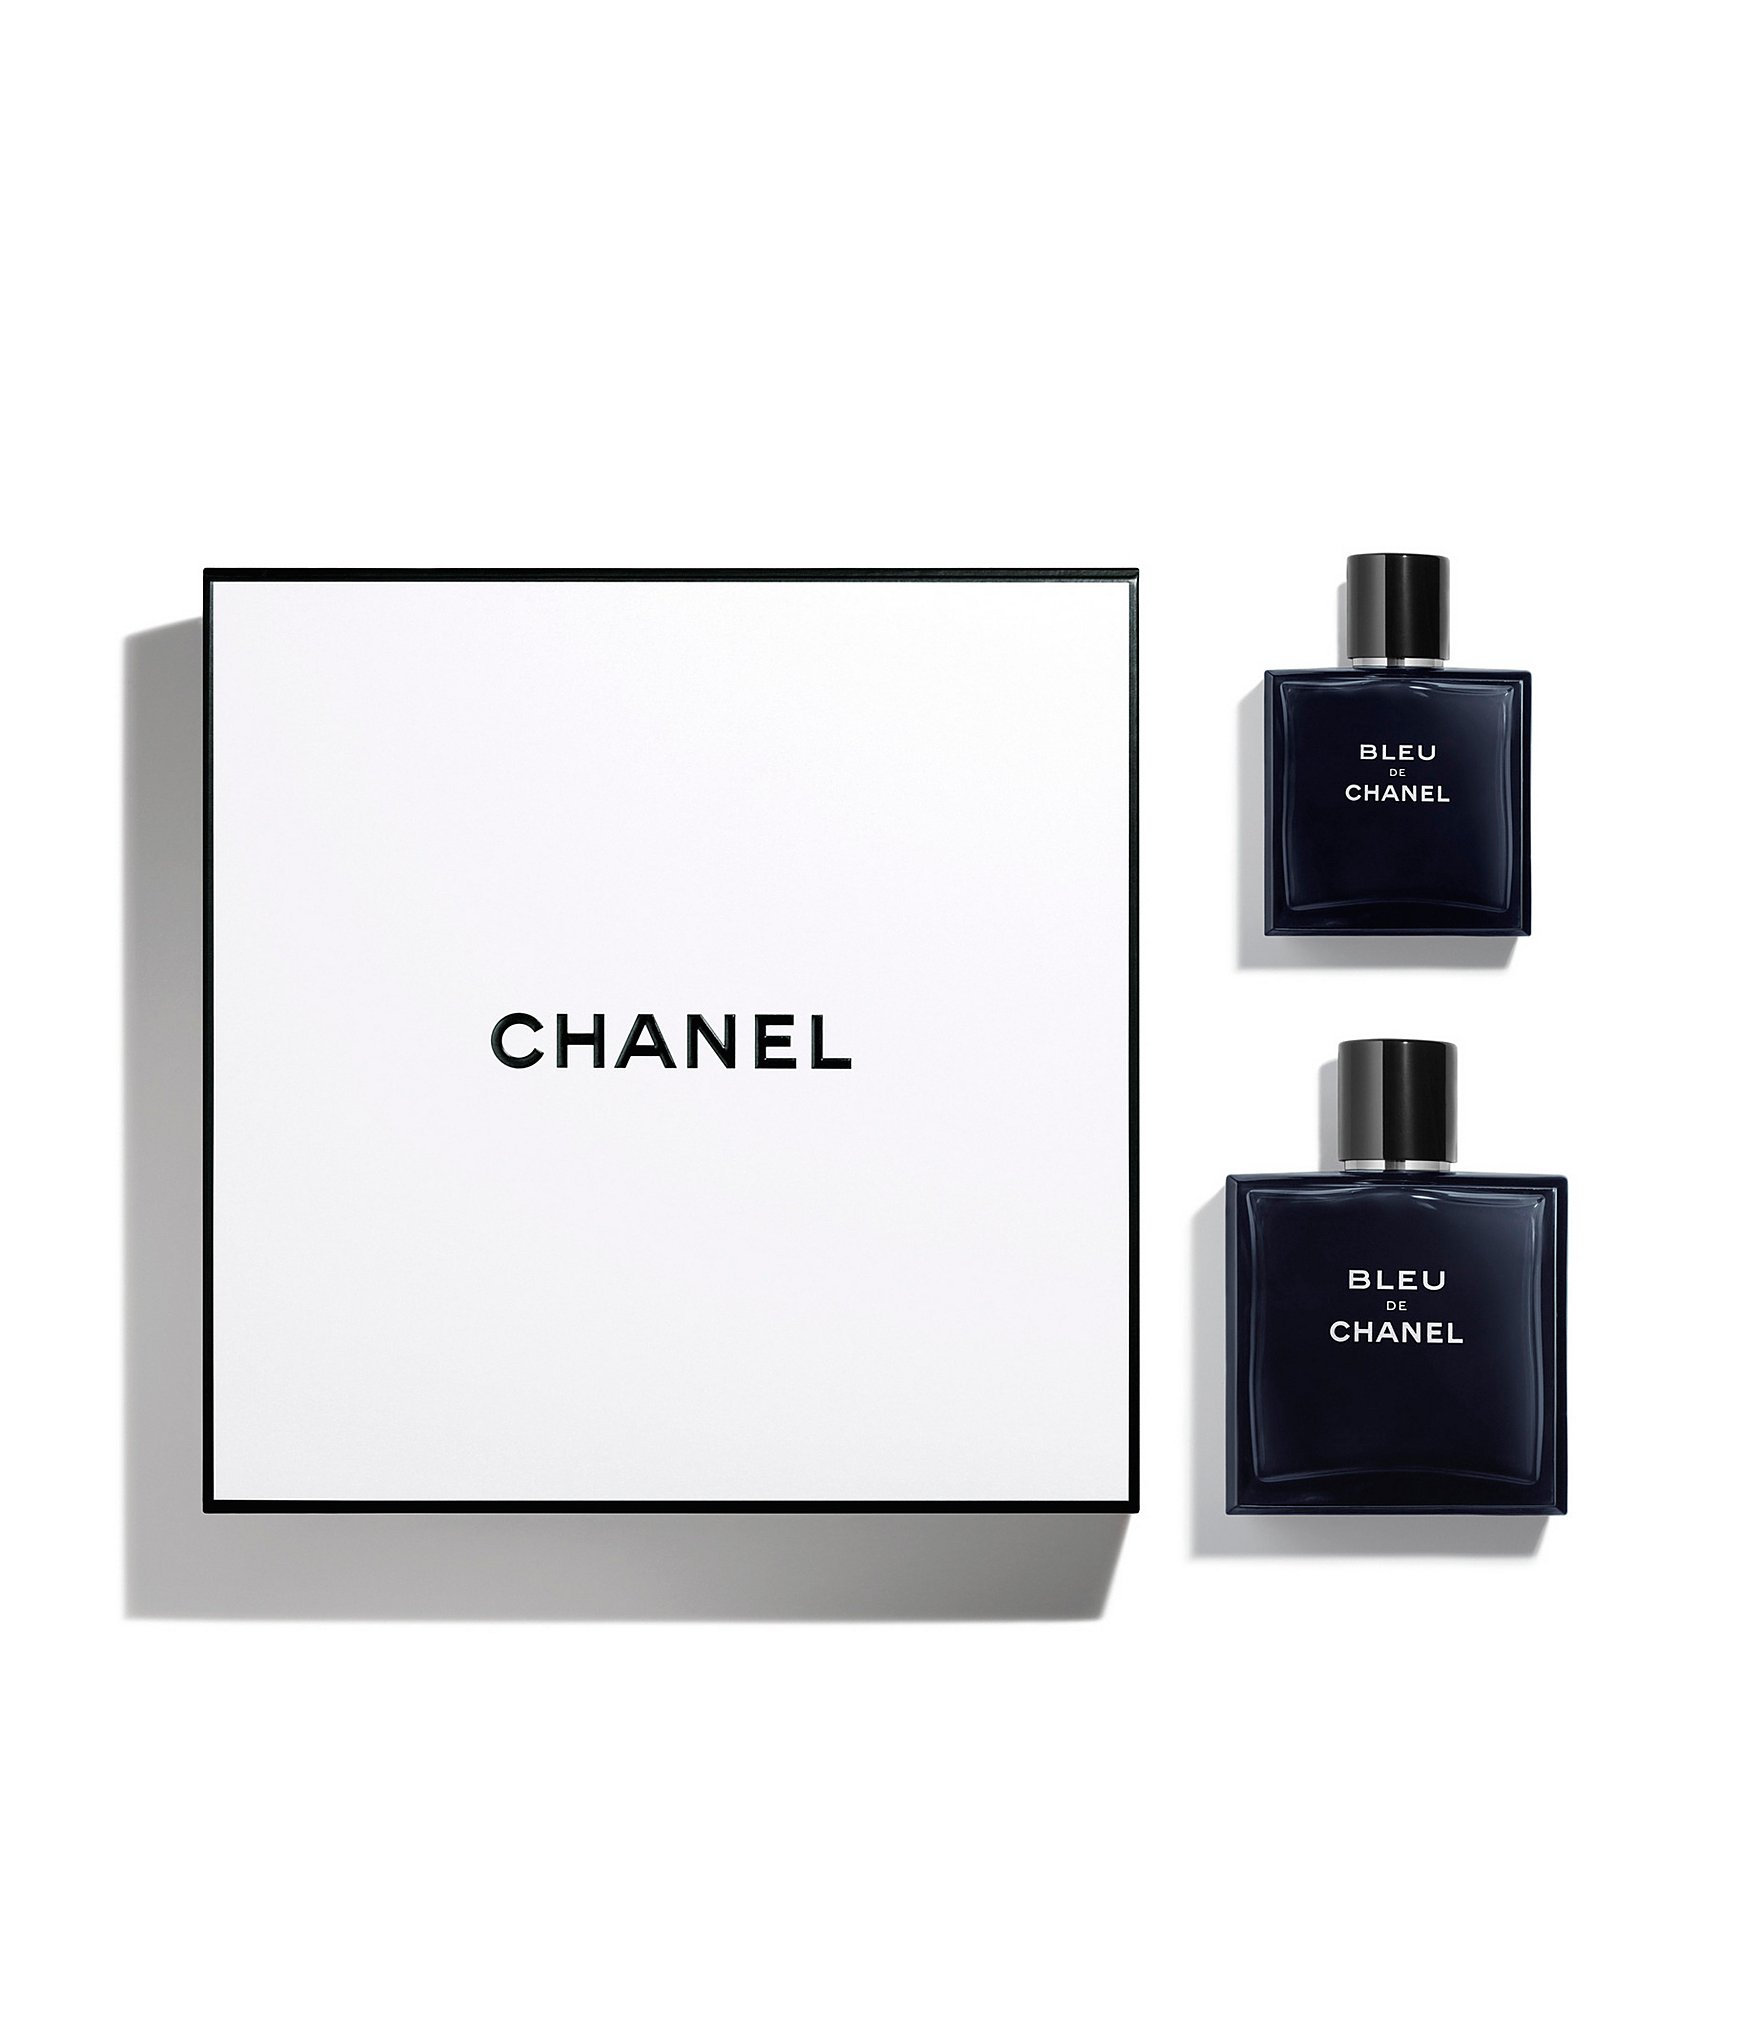  Chanel Bleu de Eau de Parfum Spray for Men, 1.7 Ounce : Beauty  & Personal Care